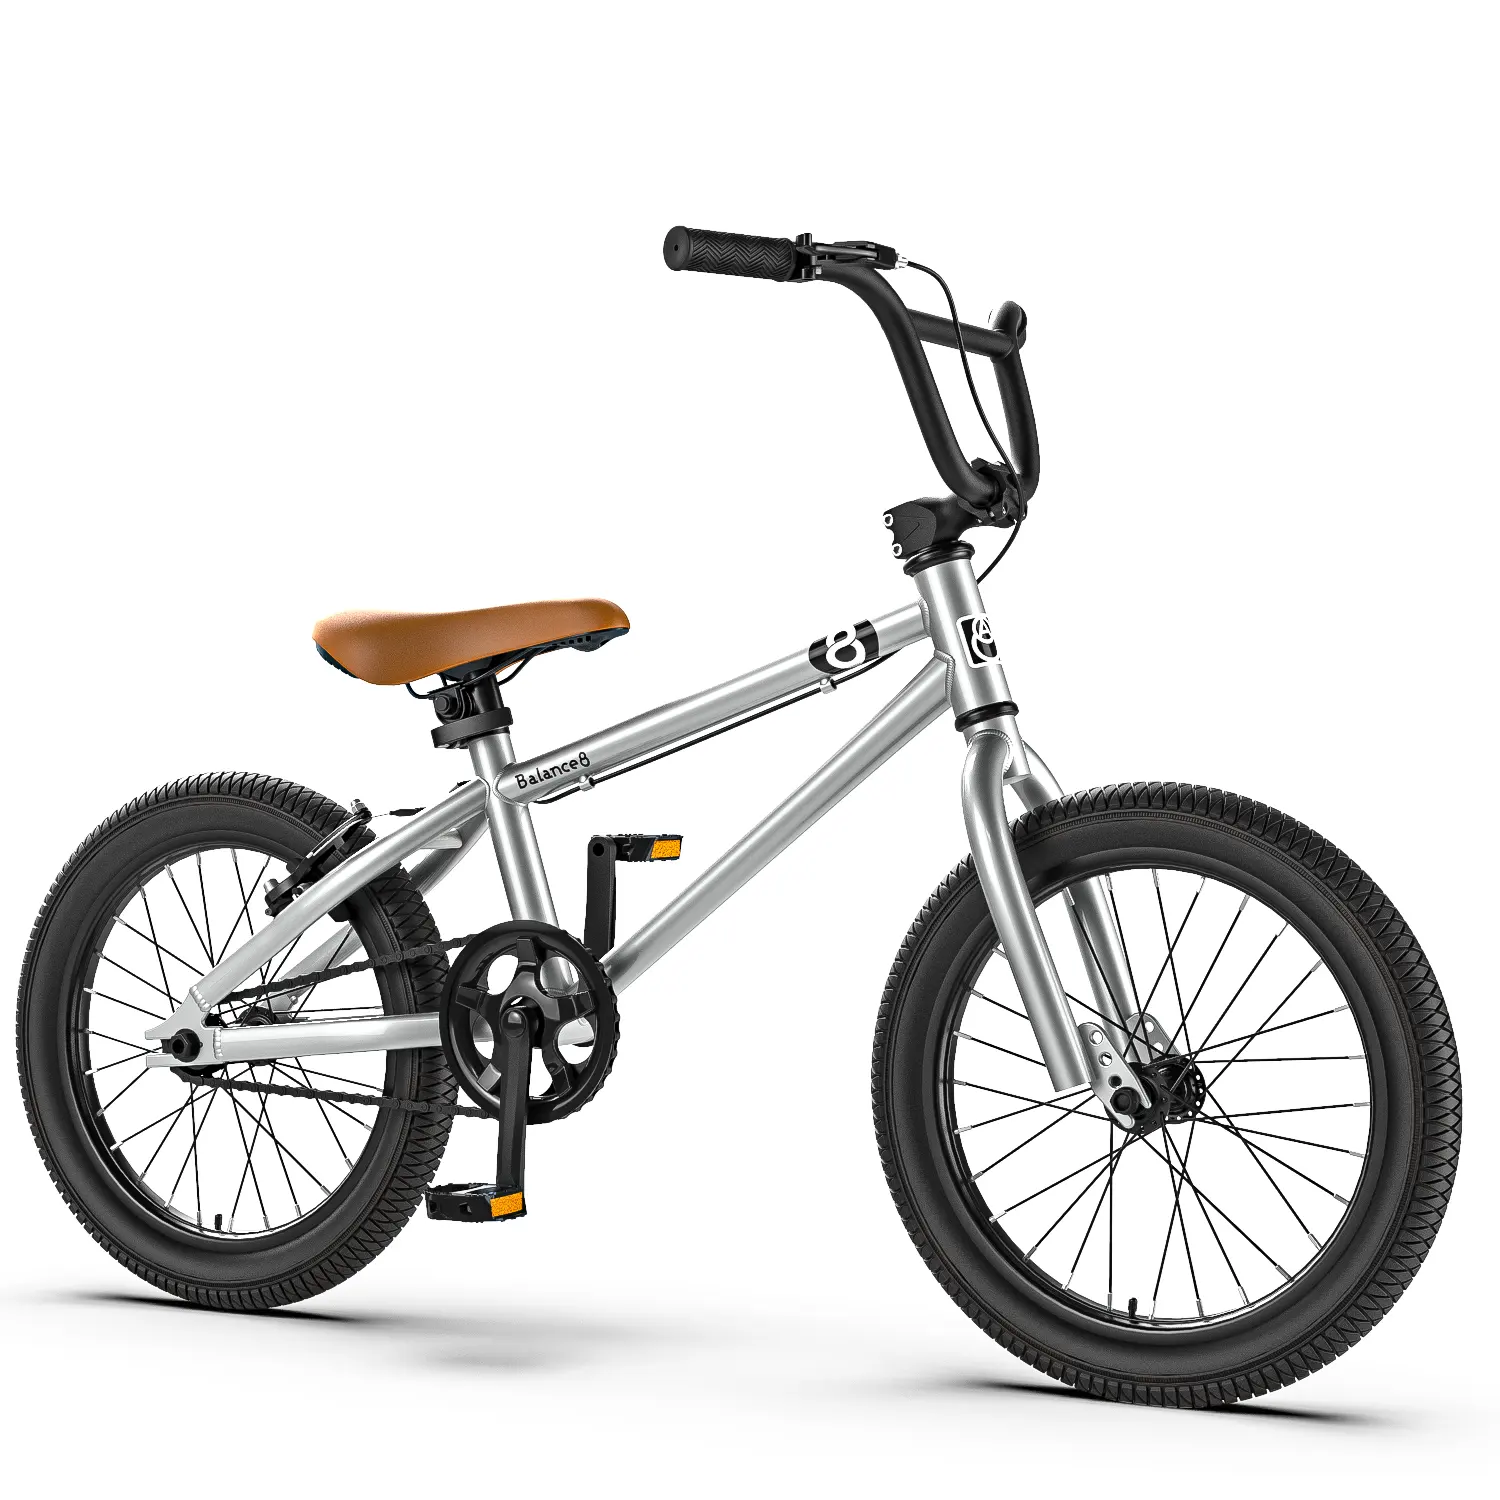 12 '14' 16 '18' 20 'नई डिजाइन बच्चों बाइक/बच्चों को साइकिल के लिए कम कीमत बच्चे/oem सेवा इस्तेमाल किया साइकिल